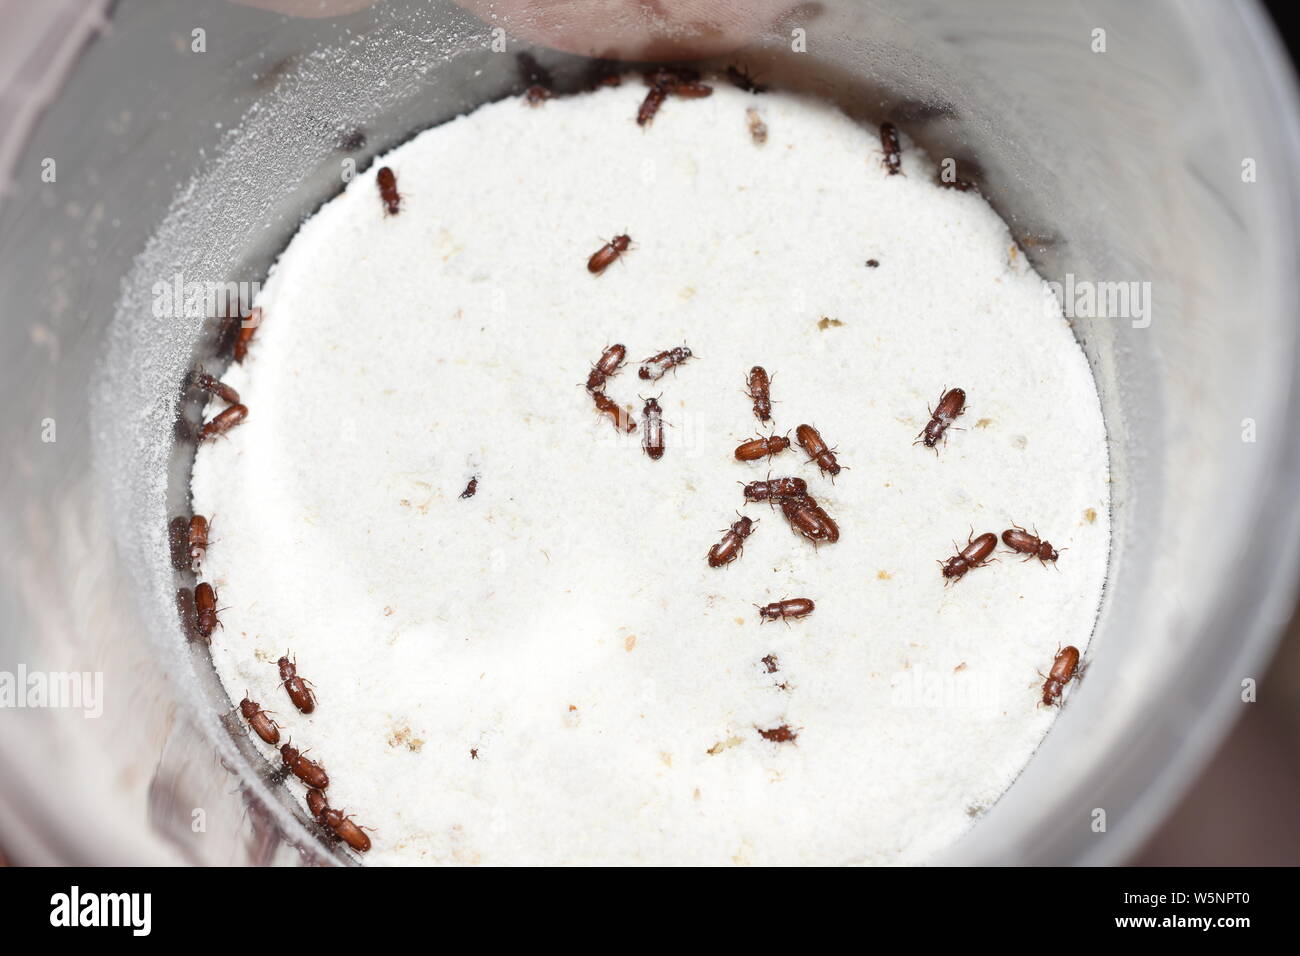 La plaga alimentaria confundió el escarabajo de harina Tribolium confusum en harina de trigo Foto de stock